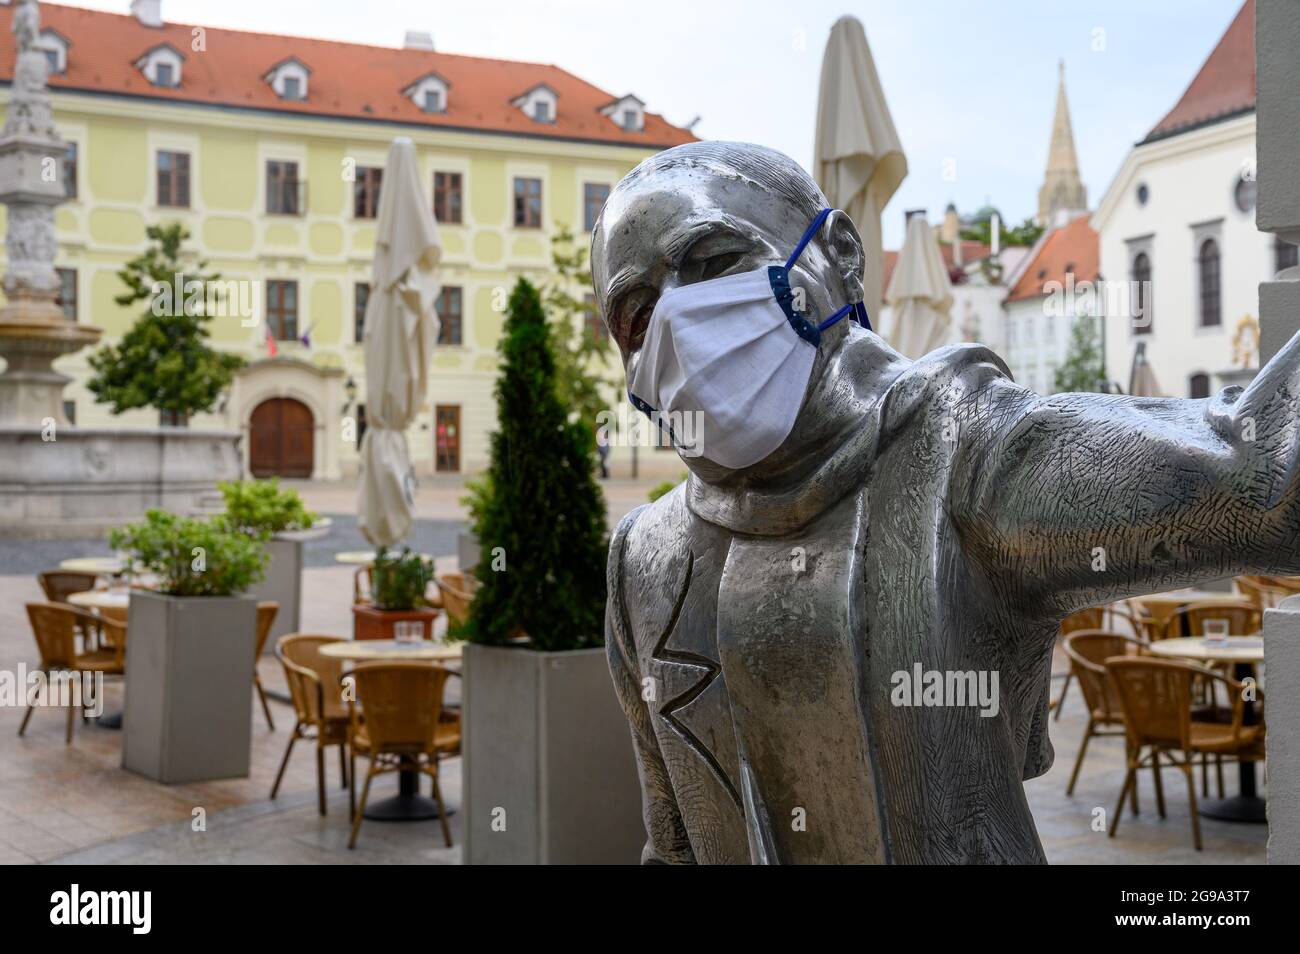 Statua di Schöne Náci con maschera facciale durante la pandemia del coronavirus. Foto Stock